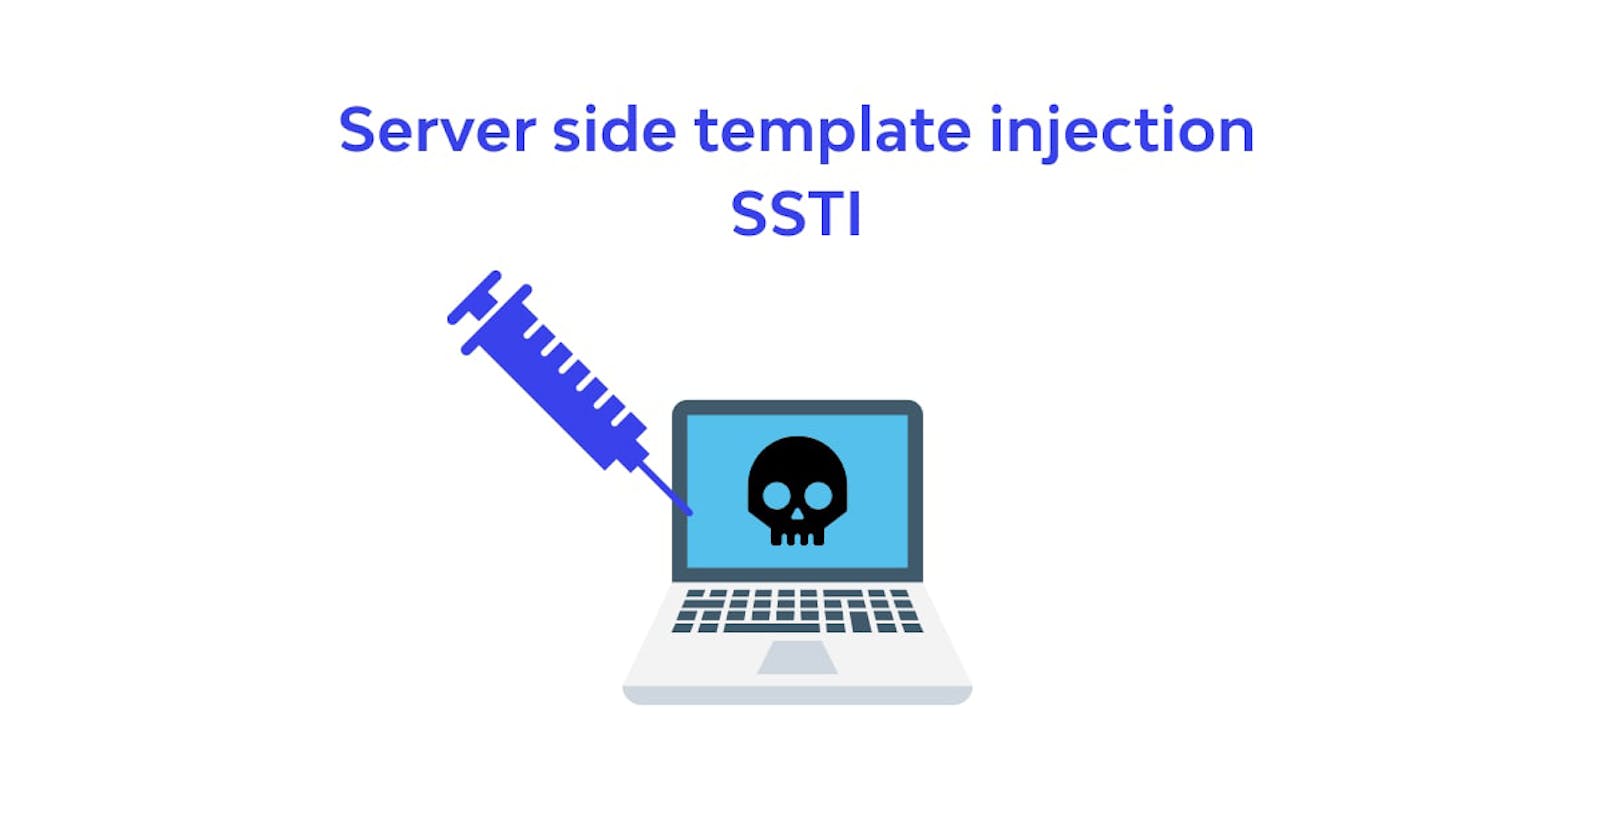 XVWA (Xtreme Vulnerable Web Application) - SSTI (Server Side Template Injection) 
güvenlik açığı tespiti, sömürüsü ve alınması gereken önlemler